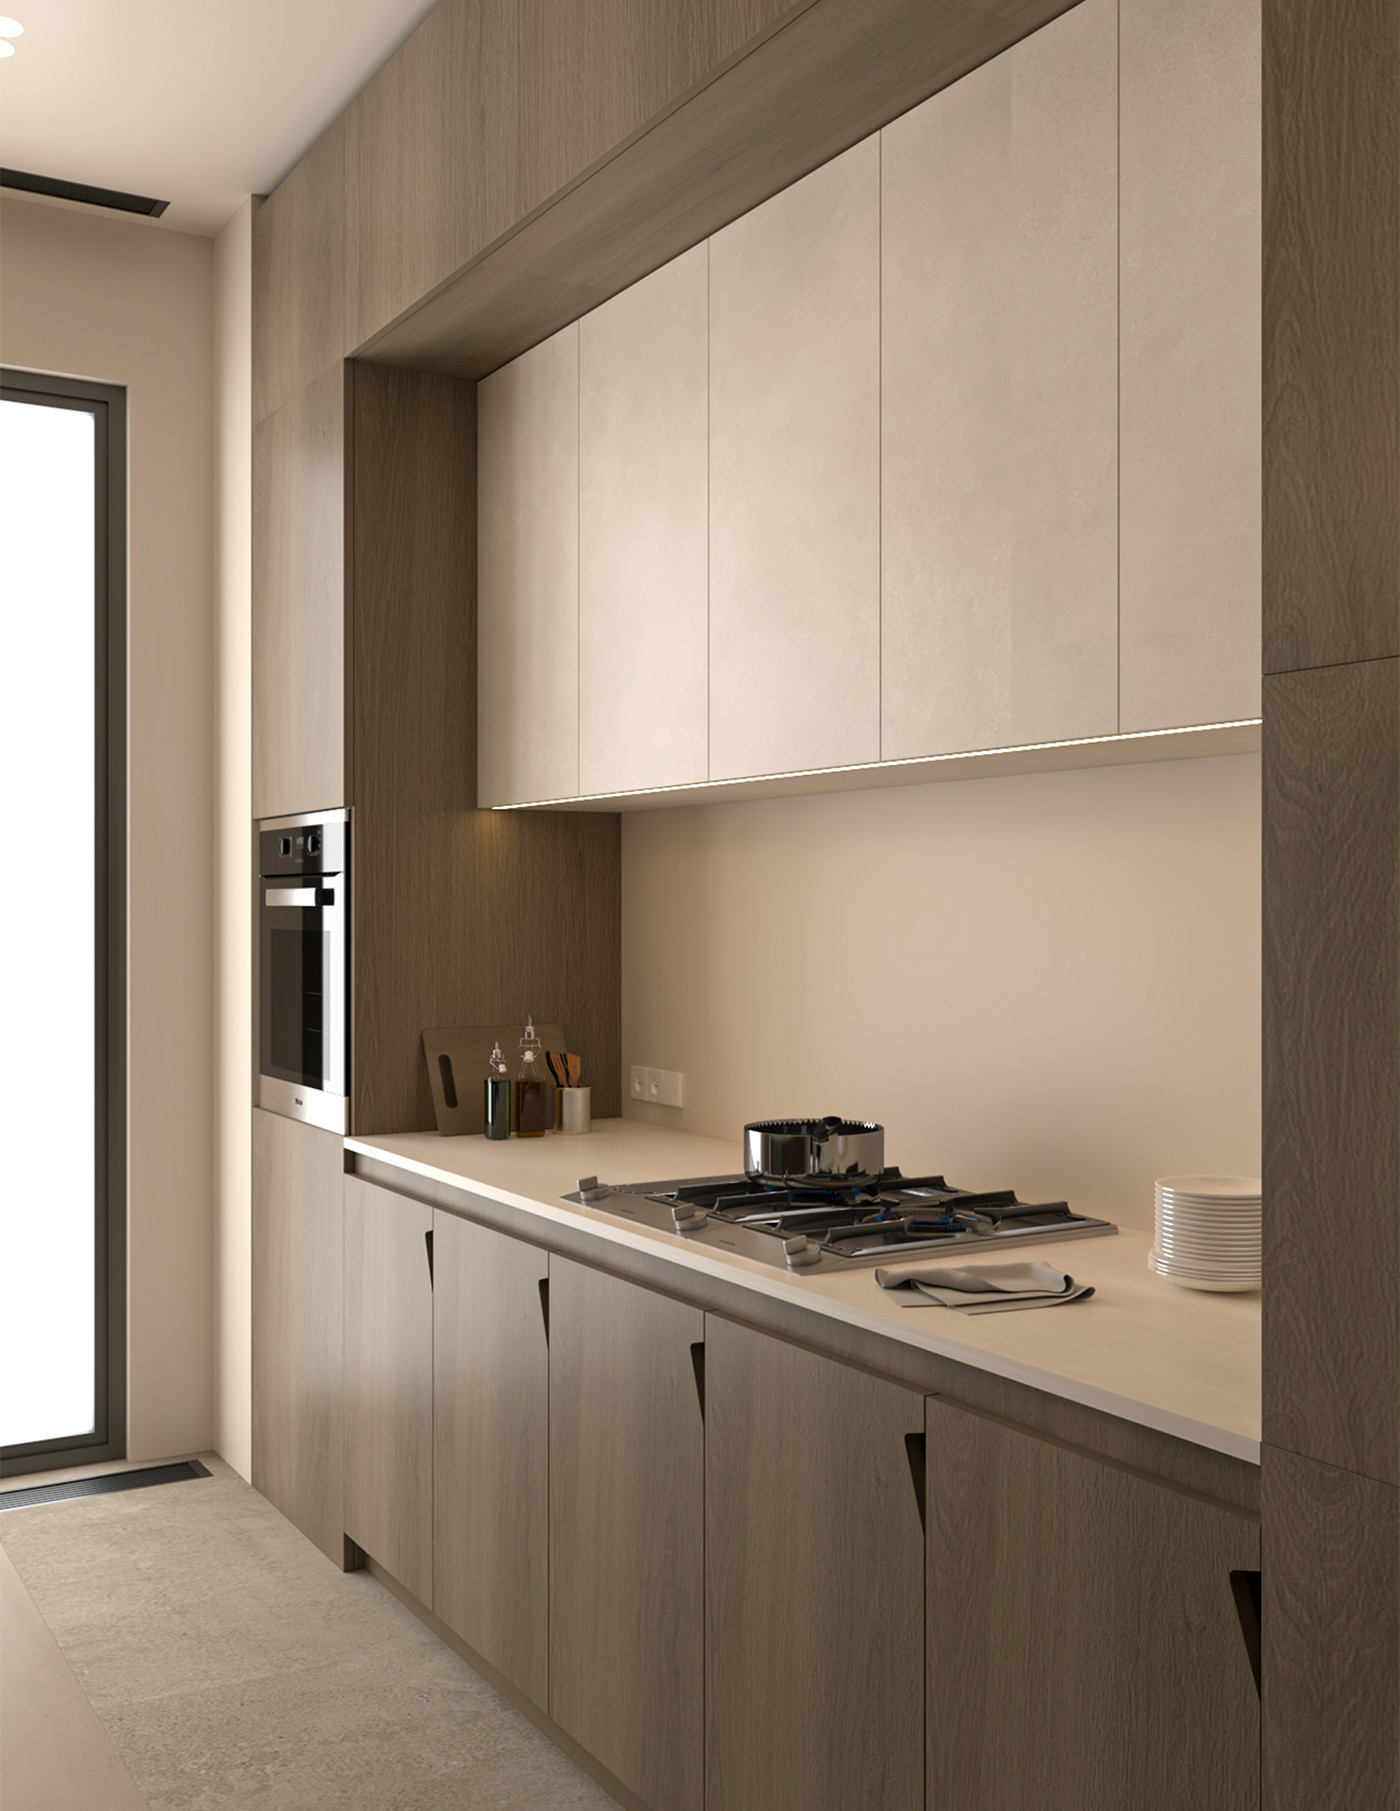 TAP kitchen interior design  visualization 3ds max architecture mood